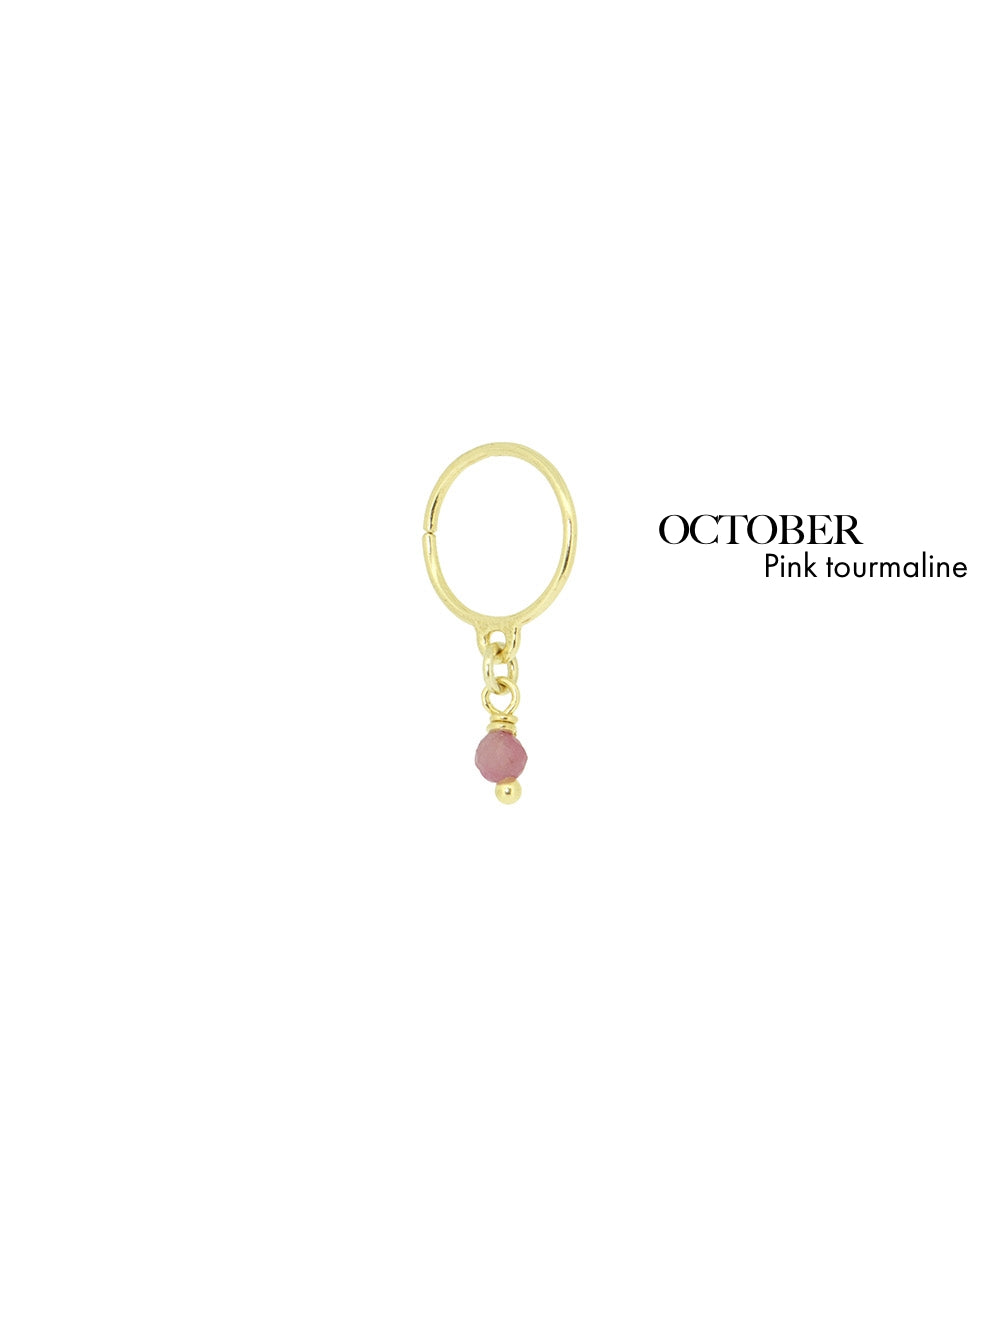 Bestie Birthstone October - Pink Tourmaline | 14K Gold Plated